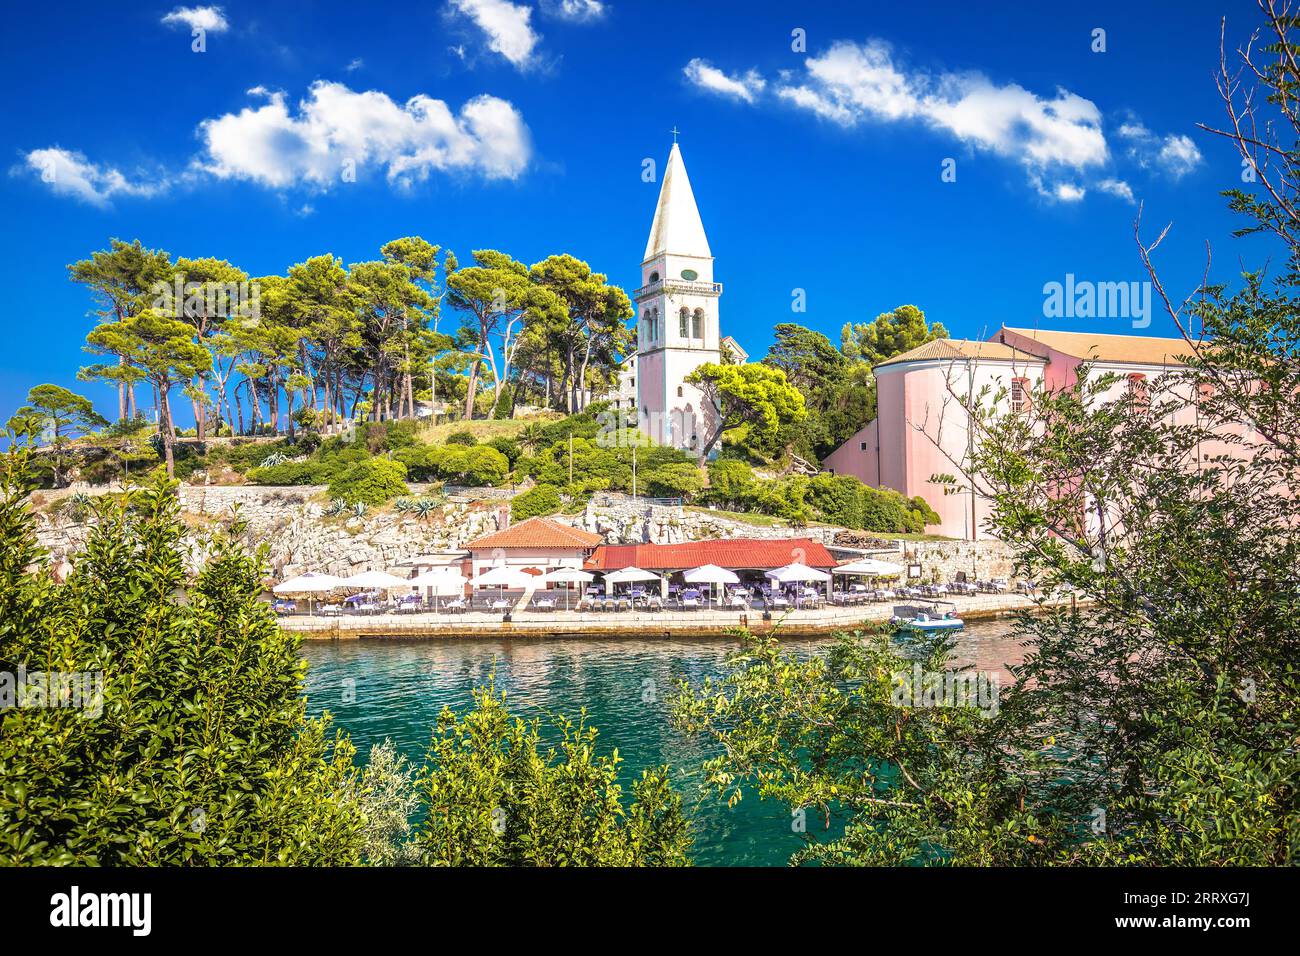 Ville de Veli Losinj église pittoresque et vue sur le port, île de Losinj, archipel de Croatie Banque D'Images